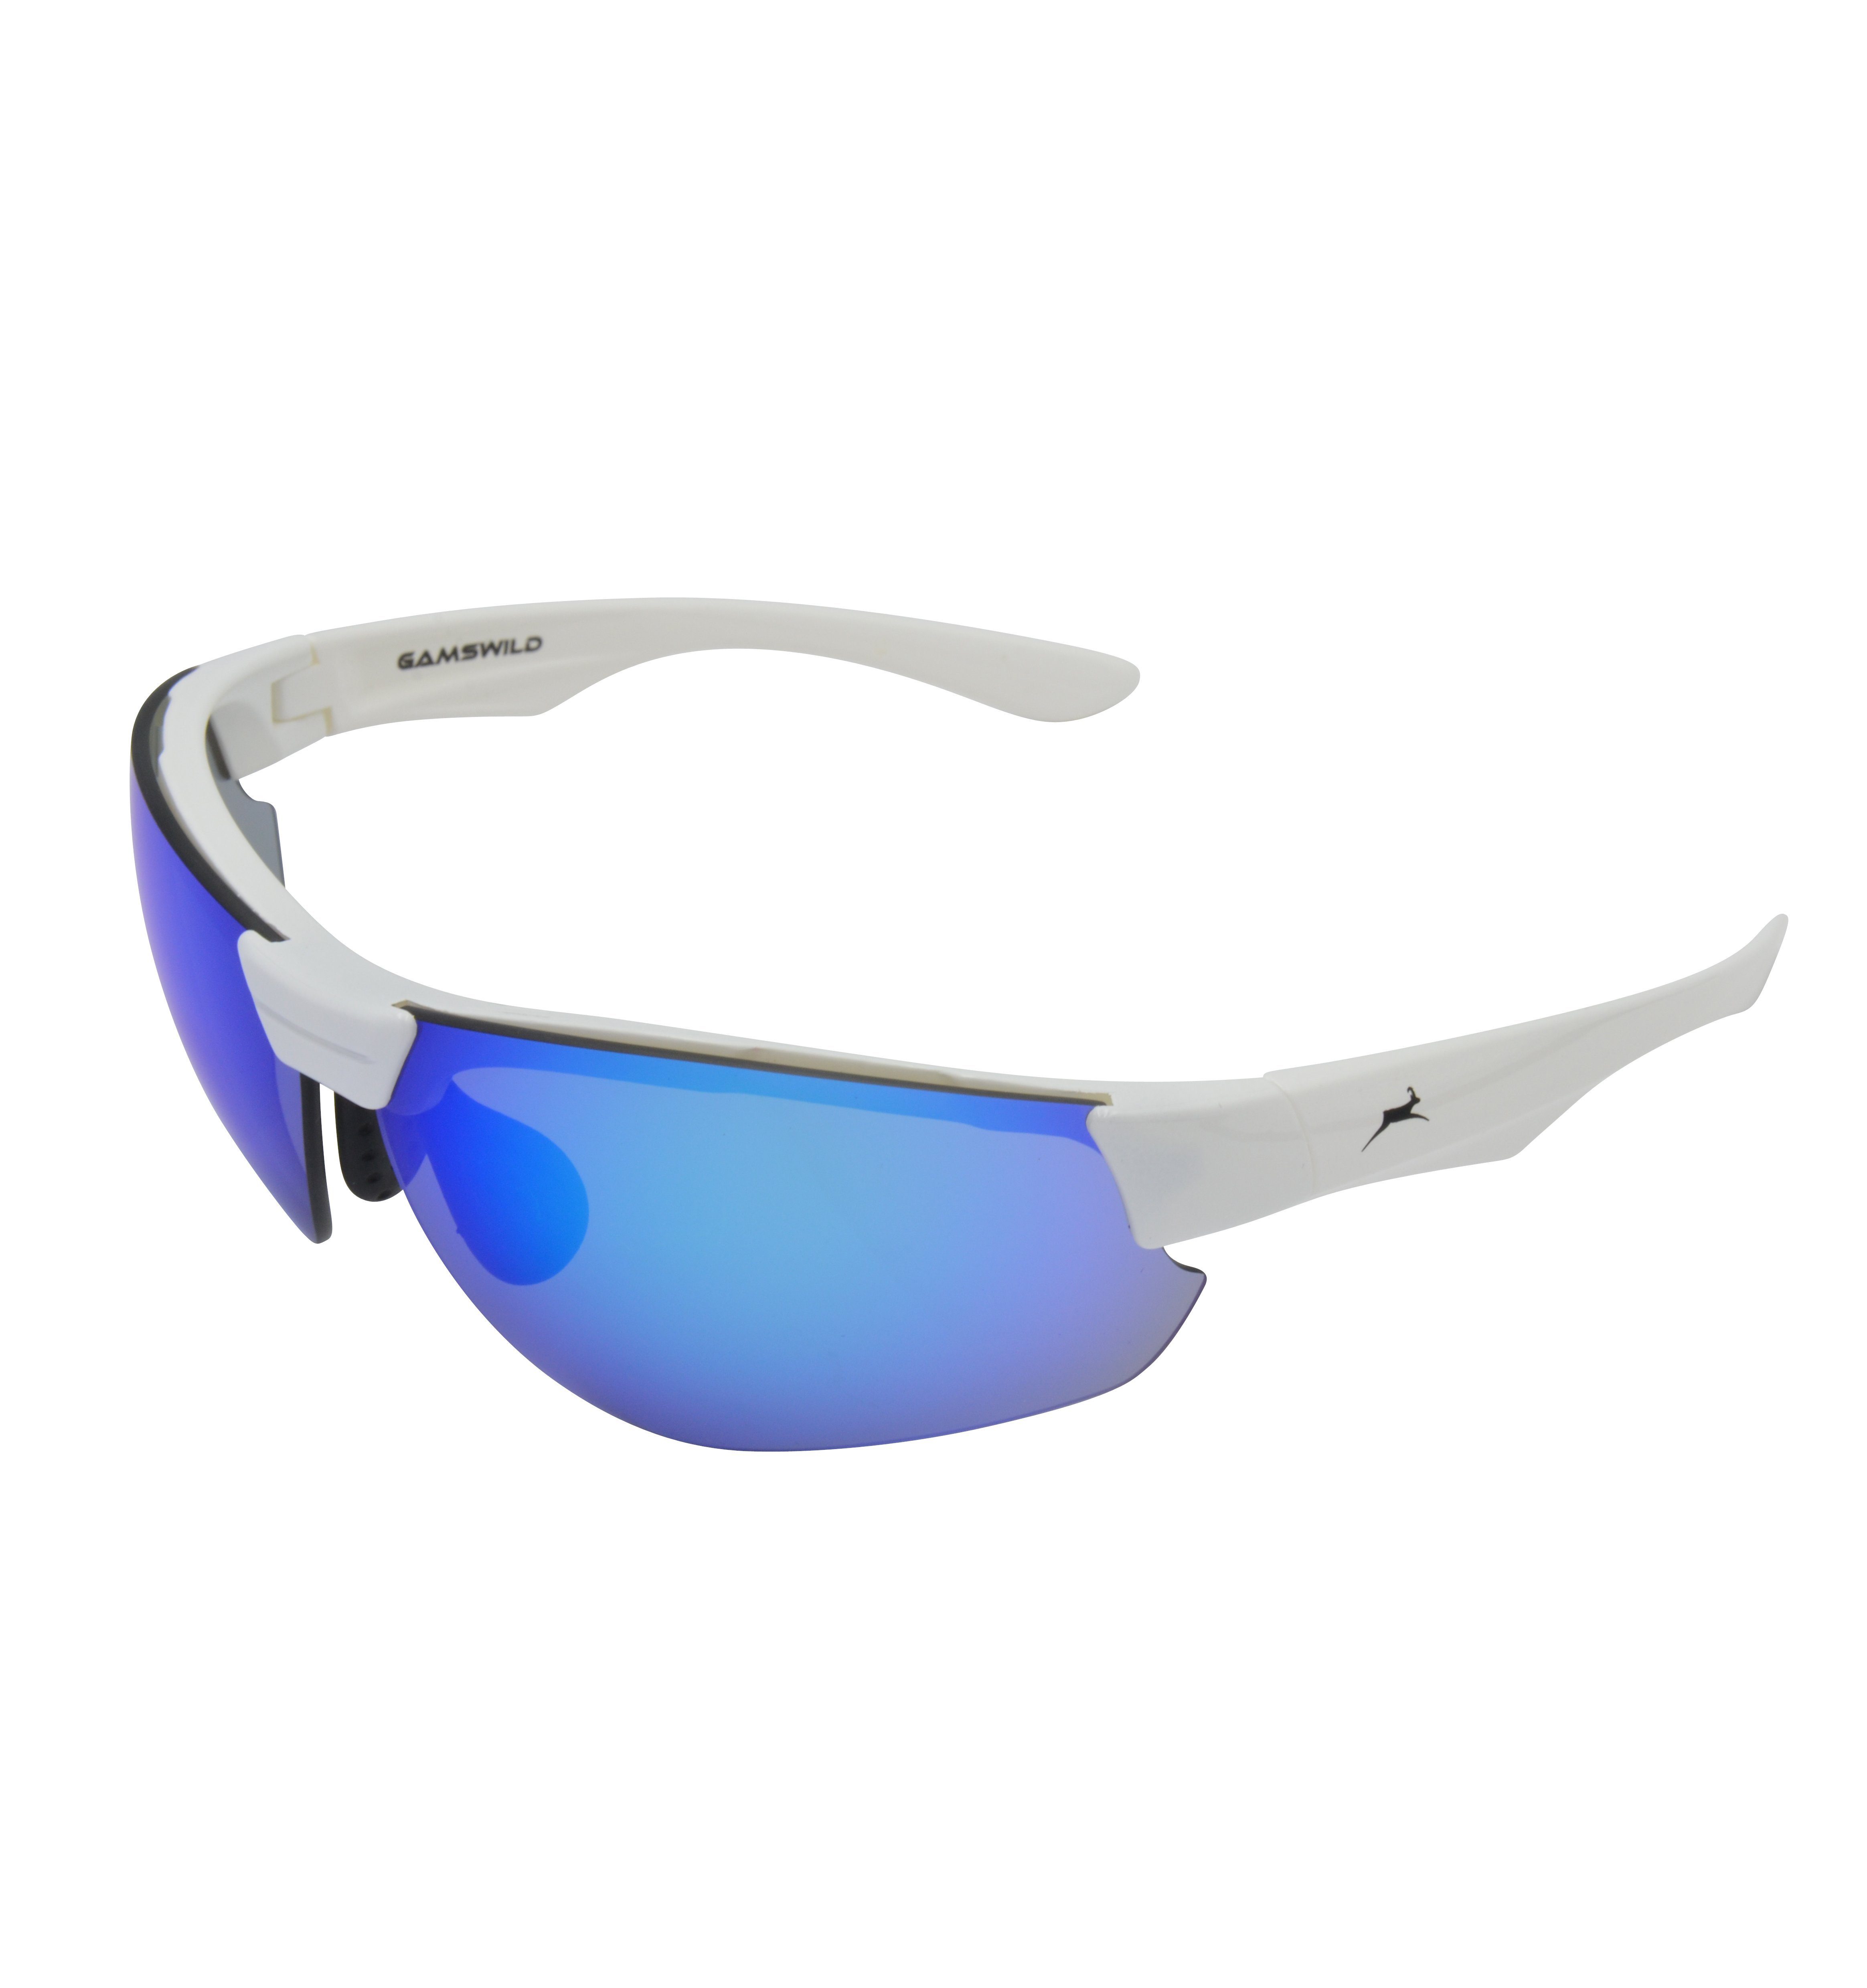 Skibrille Halbrahmenbrille Sonnenbrille Damen Herren Unisex, WS3032 Sportbrille blau, weiß, grün, Gamswild Fahrradbrille